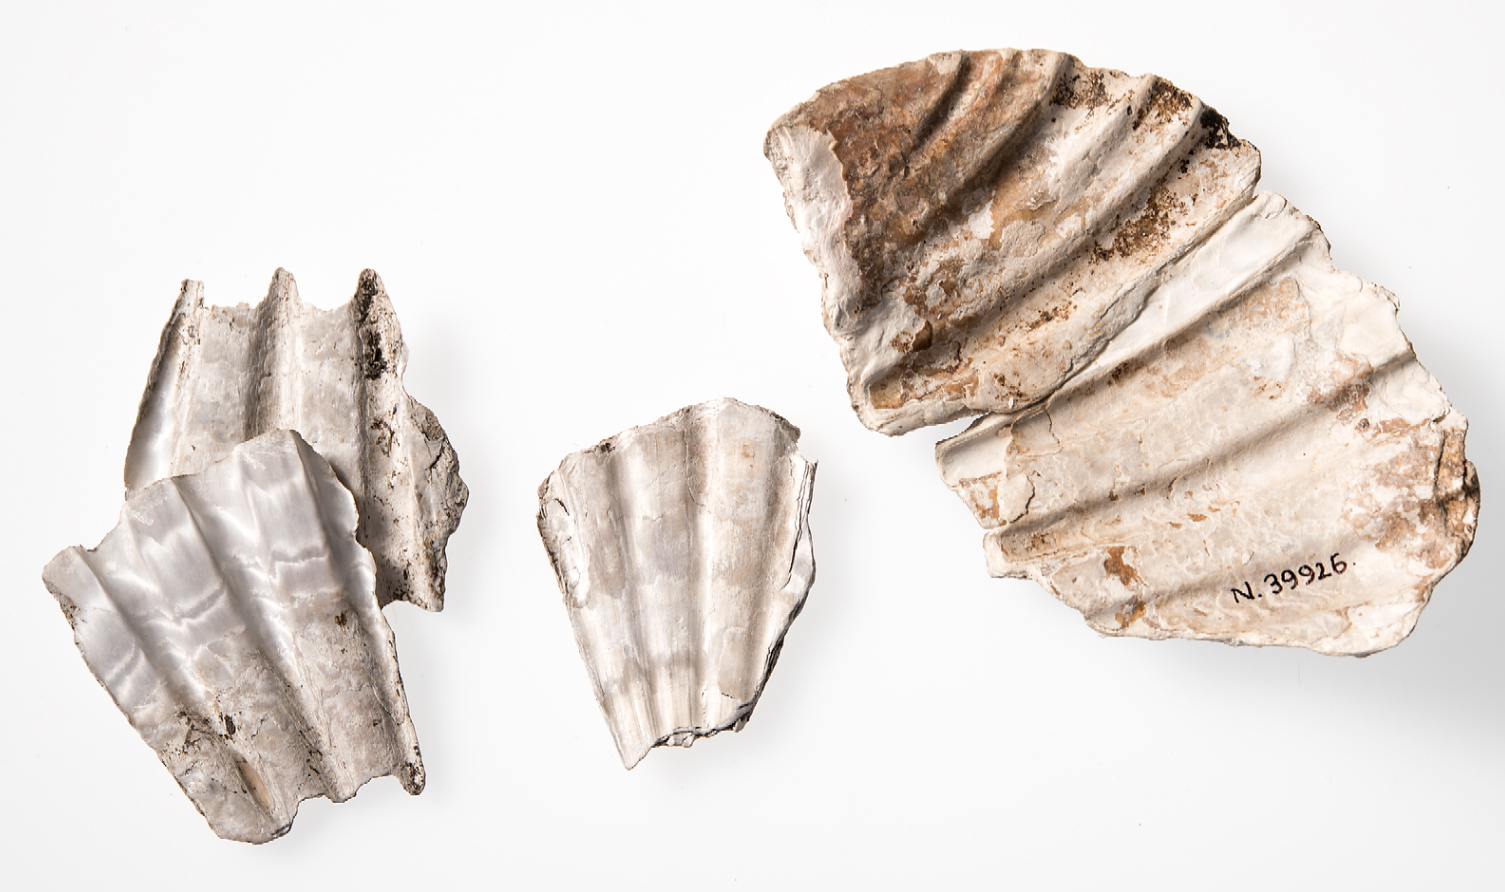 Fragmentos de las tres conchas de peregrino jacobeo más antiguas encontradas en Escandinavia. Cortesía de Åge Hojem, Museo Universitario, Universidad Noruega de Ciencia y Tecnología, Trondheim